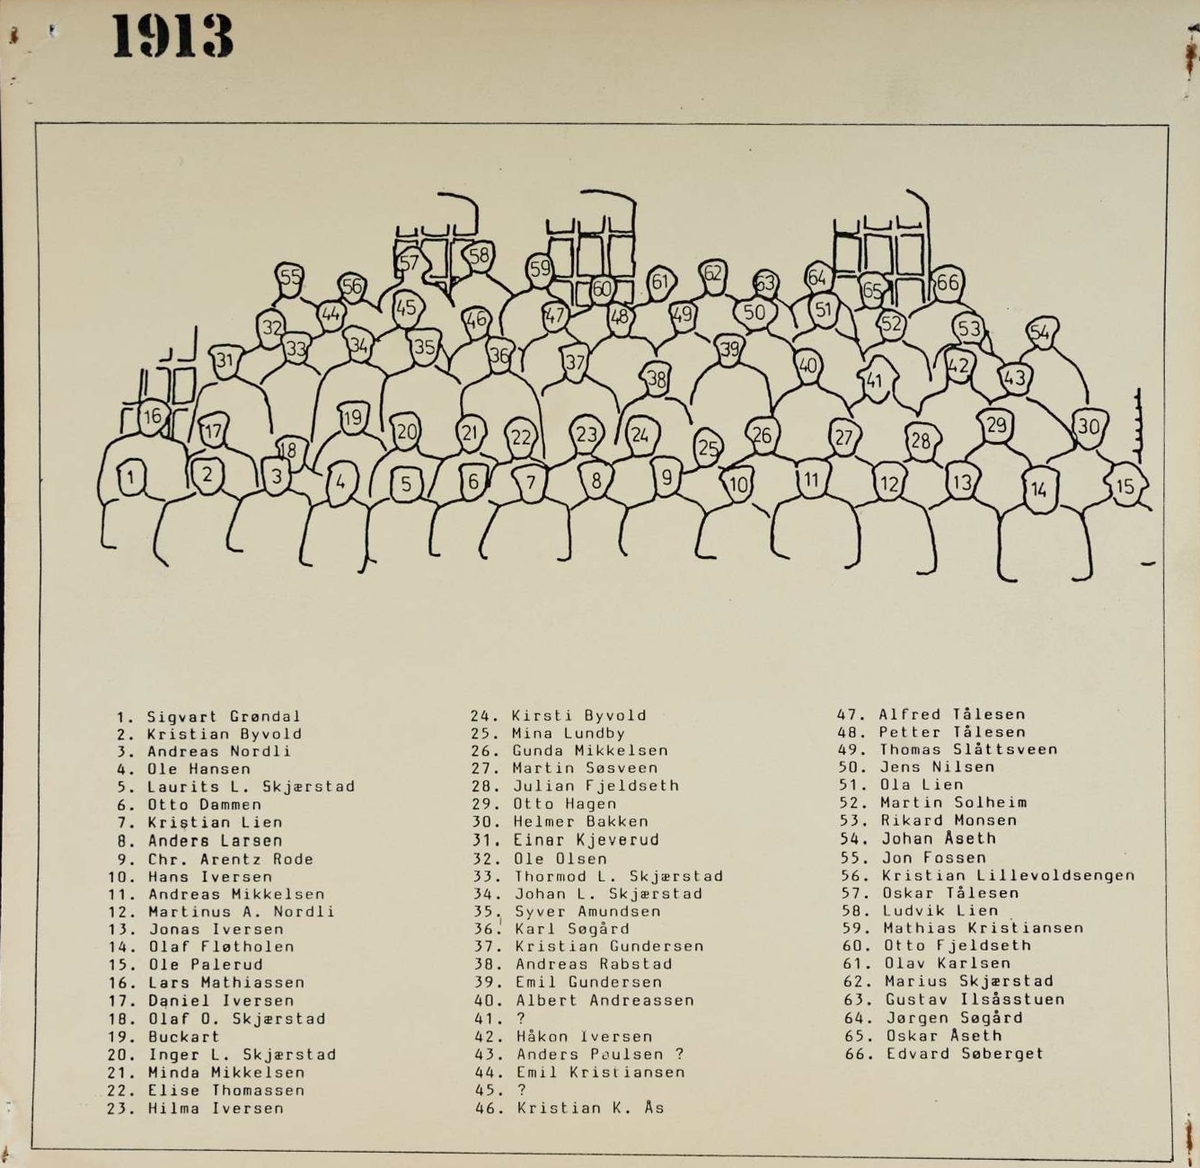 GR: 66, ARBEIDERE, KLEVFOS PAPIRFABRIKK, KLEVFOS CELLULOSE &PAPIRFABRIK A/S, ÅDALSBRUKSe Lautin 1978 side 155 for navn: side154. 1. REKKE F. V. SIGVART GRØNDAL, KRISTIAN BYVOLD, ANDREAS NORDLI, OLE HANSEN, LAURITS L. SKJÆRSTAD, OTTO DAMMEN, KRISTIAN LIEN, ANDERS LARSEN, CHR. ARENTZ RODE, HANS IVERSEN, ANDREAS MIKKELSEN, MARTINIUS A. NORDLI, JONAS IVERSEN, OLAF FLØTHOLEN, OLE PALERUD. 2. REKKE F. V. LARS MATHIASSEN, DANIEL IVERSEN, OLAF O. SKJÆRSTAD, BUCKART, INGER M. SKJÆRSTAD, MINDA MIKKELSEN, ELISE THOMASSEN, HILMA IVERSEN, KIRSTI BYVOLD, MINA LUNDBY, GUNDA MIKKELSEN, MARTIN SØSVEEN, JULIAN FJELDSETH, OTTO HAGEN, HELMER BAKKEN, EINAR KJEVERUD. 3. REKKE F. V. EINAR KJEVERUD, OLE OLSEN, THORMOD L. SKJÆRSTAD, JOHAN L. SKJÆRSTAD, SYVER AMUNDSEN, KARL SØGÅRD, KRISTIAN GUNDERSEN, ANDREAS RABSTAD, EMIL GUNDERSEN, ALBERT ANDREASSEN, UKJENT, HÅKON IVERSEN, ANDREAS PAULSEN?, 4. REKKE F. V. EMIL KRISTIANSEN, UKJENT, KRISTIAN K. ÅS, ALFRED TÅLESEN, PETTER TÅLESEN, THOMAS SLAATSVEEN, JENS NILSEN, OLA LIEN, MARTIN SOLHEIM, RIKARD MONSEN, JOHAN ÅSETH. 5. REKKE F. V. JON FOSSEN, KRISTIAN LILLEVOLDSENGEN, OSKAR TÅLESEN, LUDVIK LIEN, MATHIAS KRISTIANSEN, OTTO FJELDSETH, OLAV KARLSEN, MARIUS SKJÆRSTAD, GUSTAV ILSÅSSTUEN, JØRGEN SØGÅRD, OSKAR ÅSETH, EDVARD SØBERGET Løten.